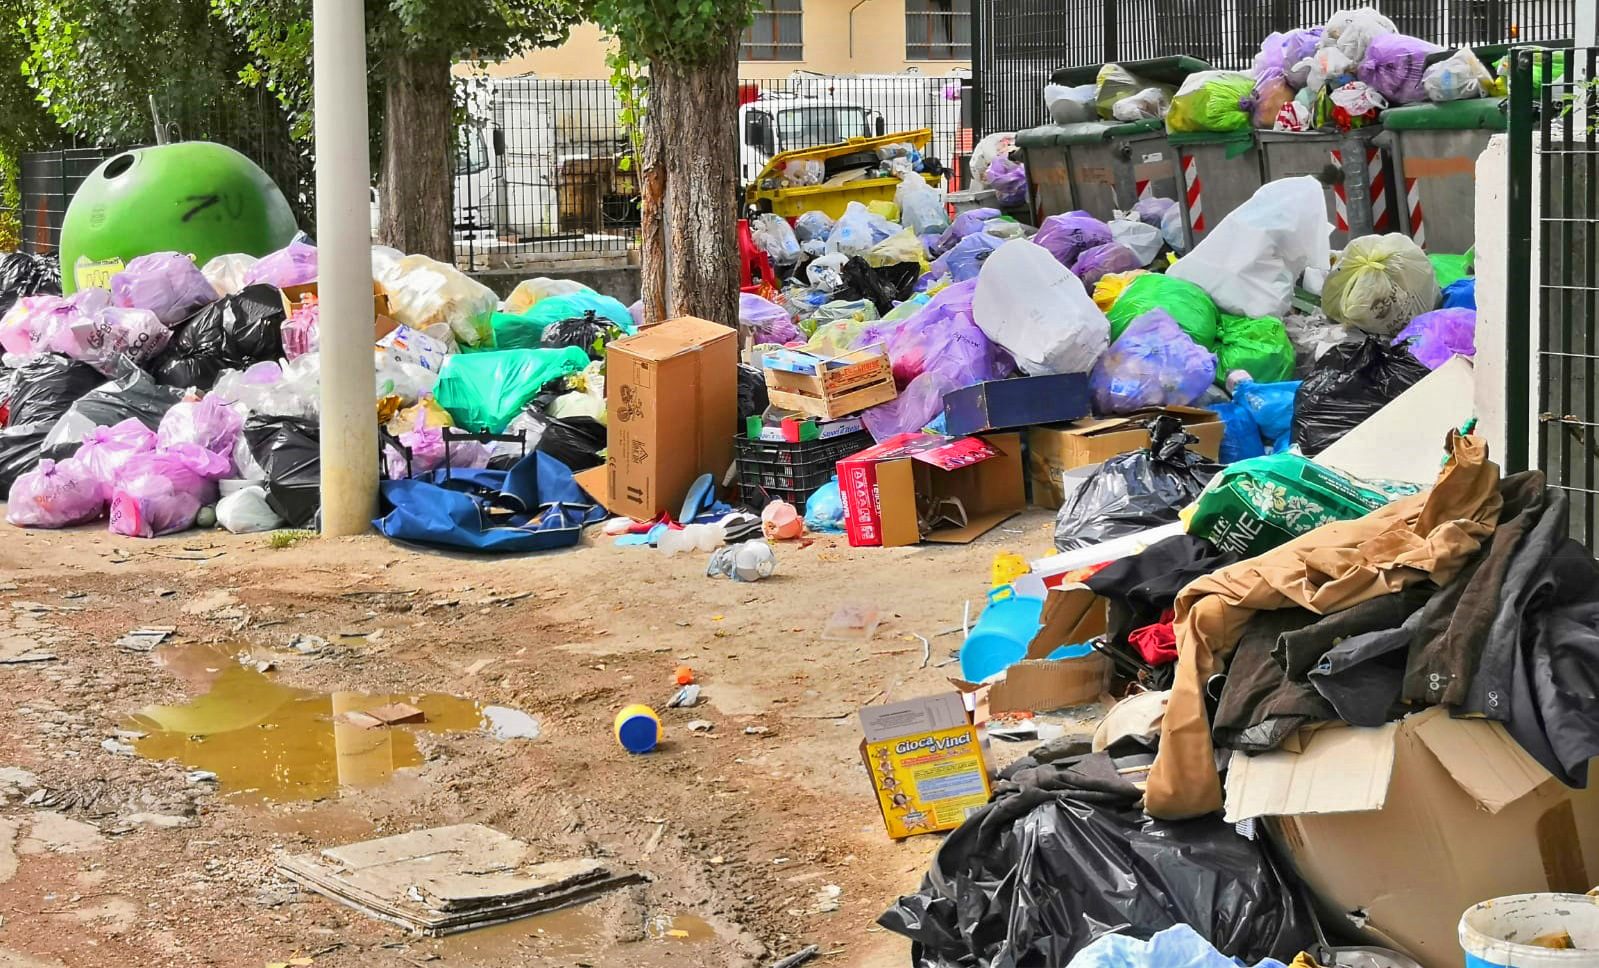 Segen SPA » TAGLIACOZZO – Montagna di rifiuti abbandonati nel centro  raccolta Segen da centinaia di persone incivil